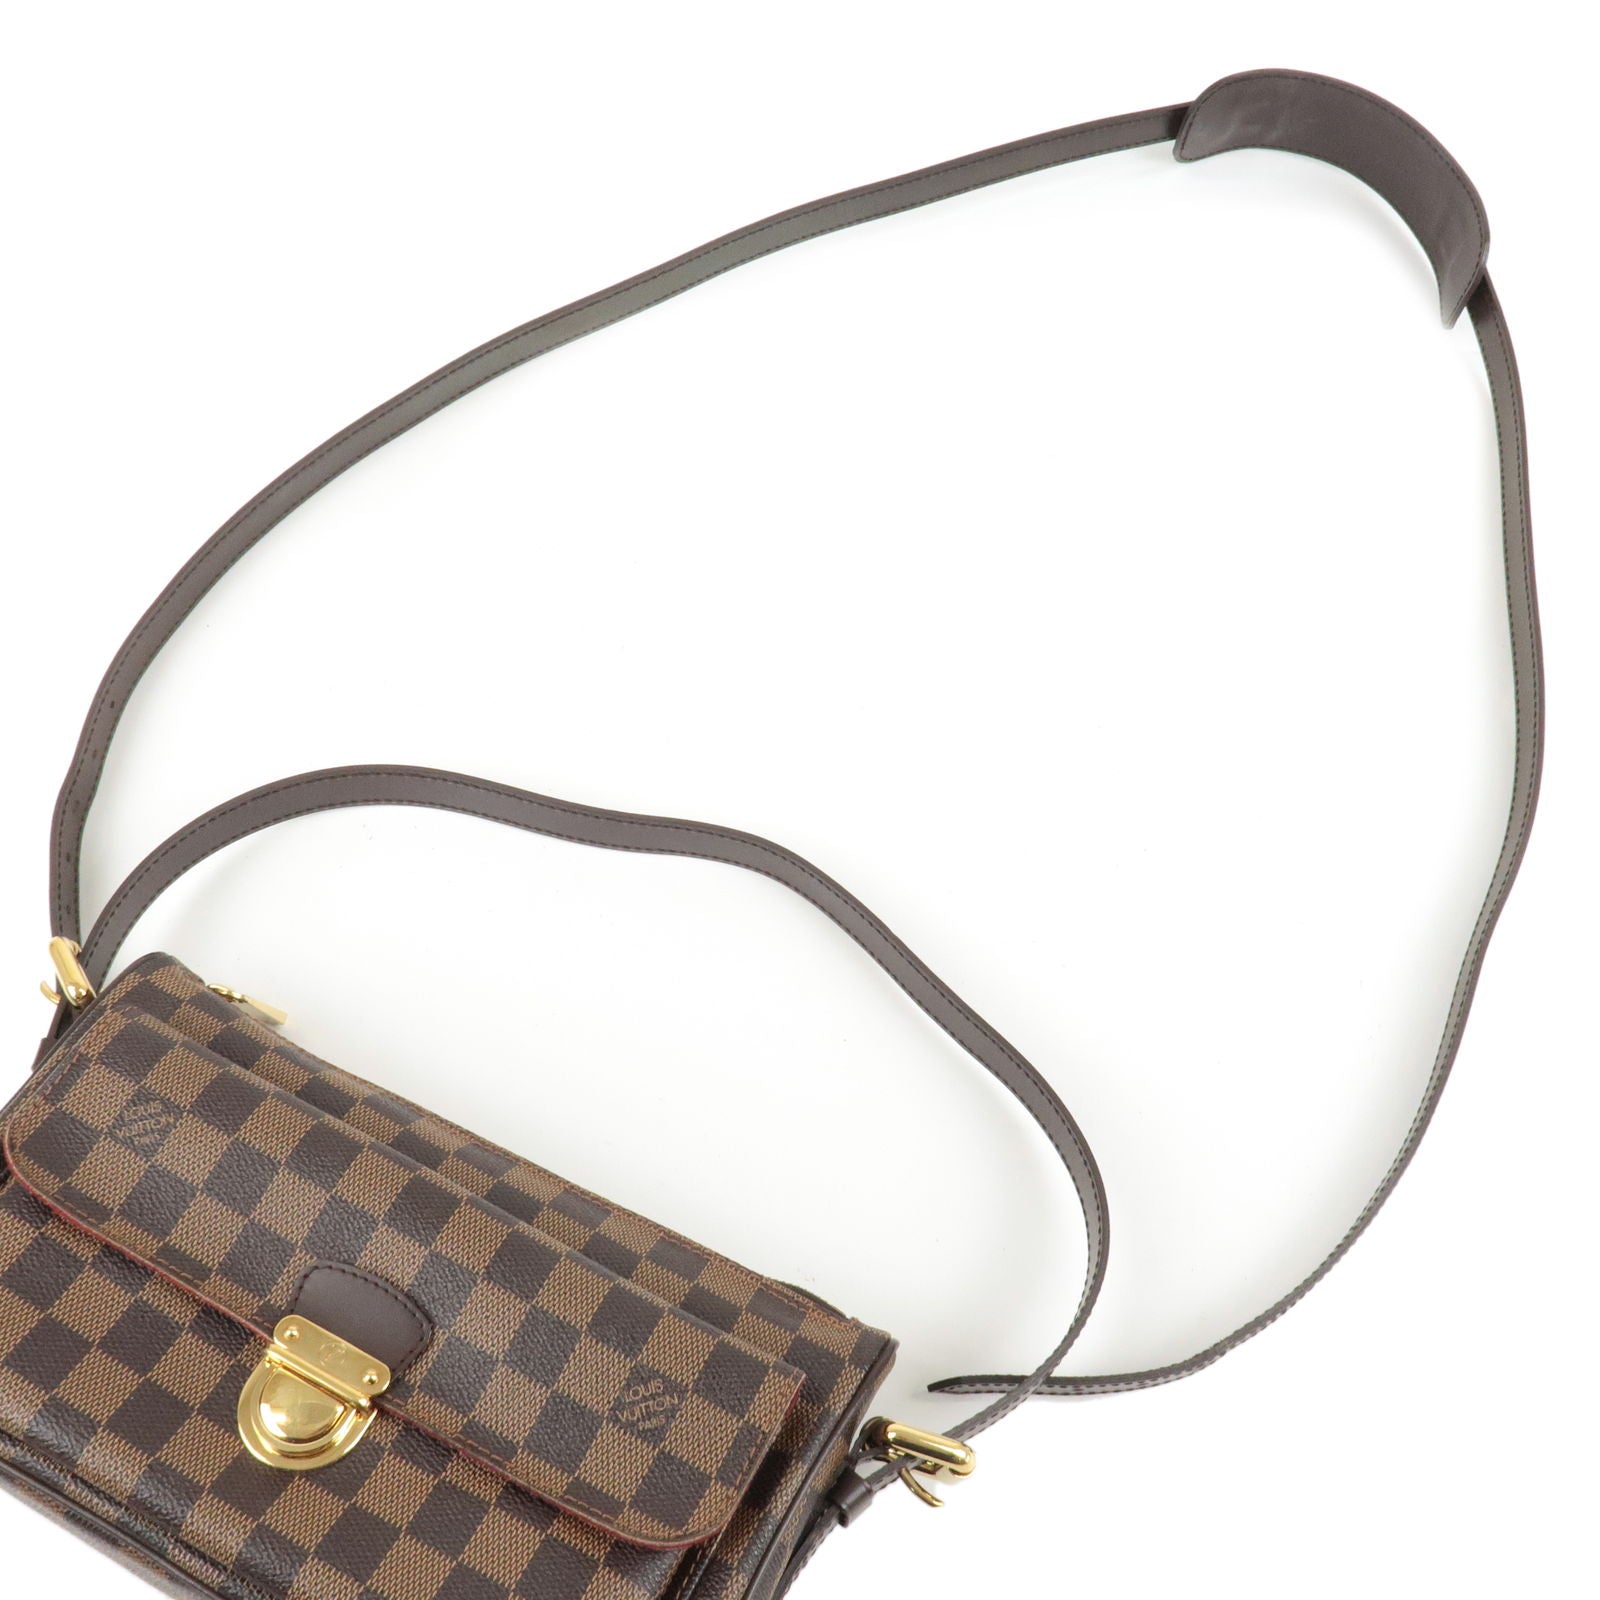 LOUIS VUITTON Louis Vuitton Ravello GM Brown N60006 Ladies Damier Canvas  Shoulder Bag